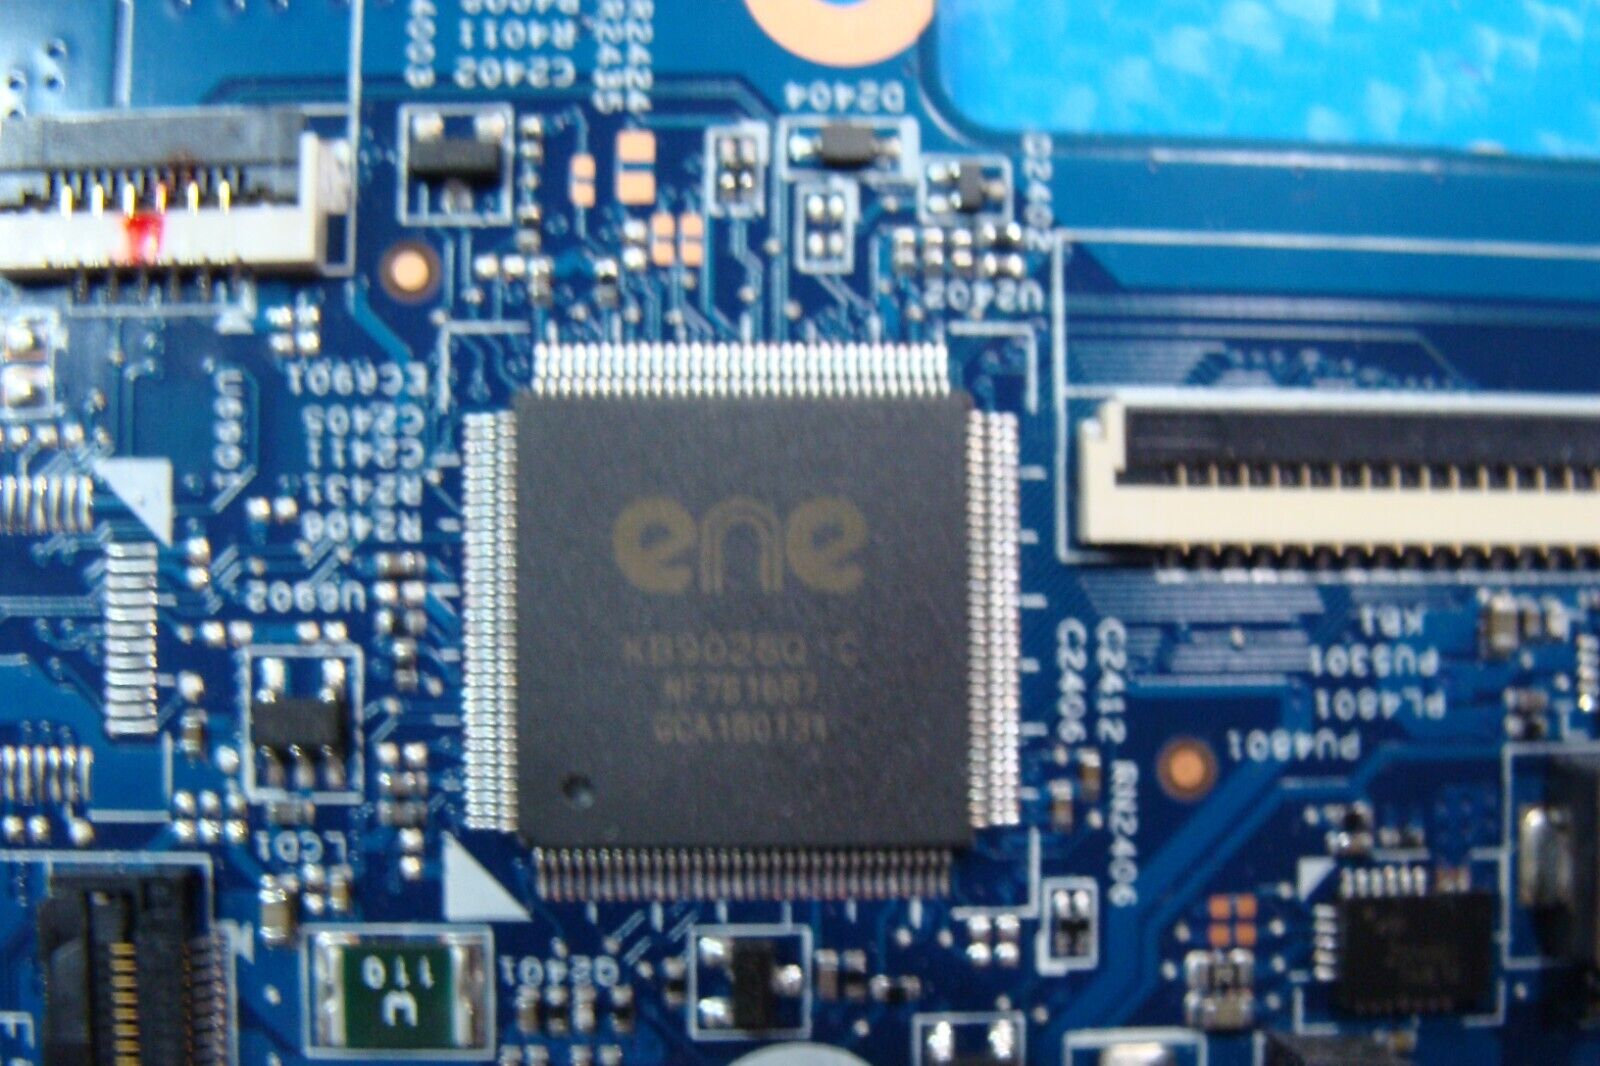 HP Envy x360 15.6” 15t-aq200 Intel i7-8550U 1.8GHz Motherboard 448.0DJ05.0021